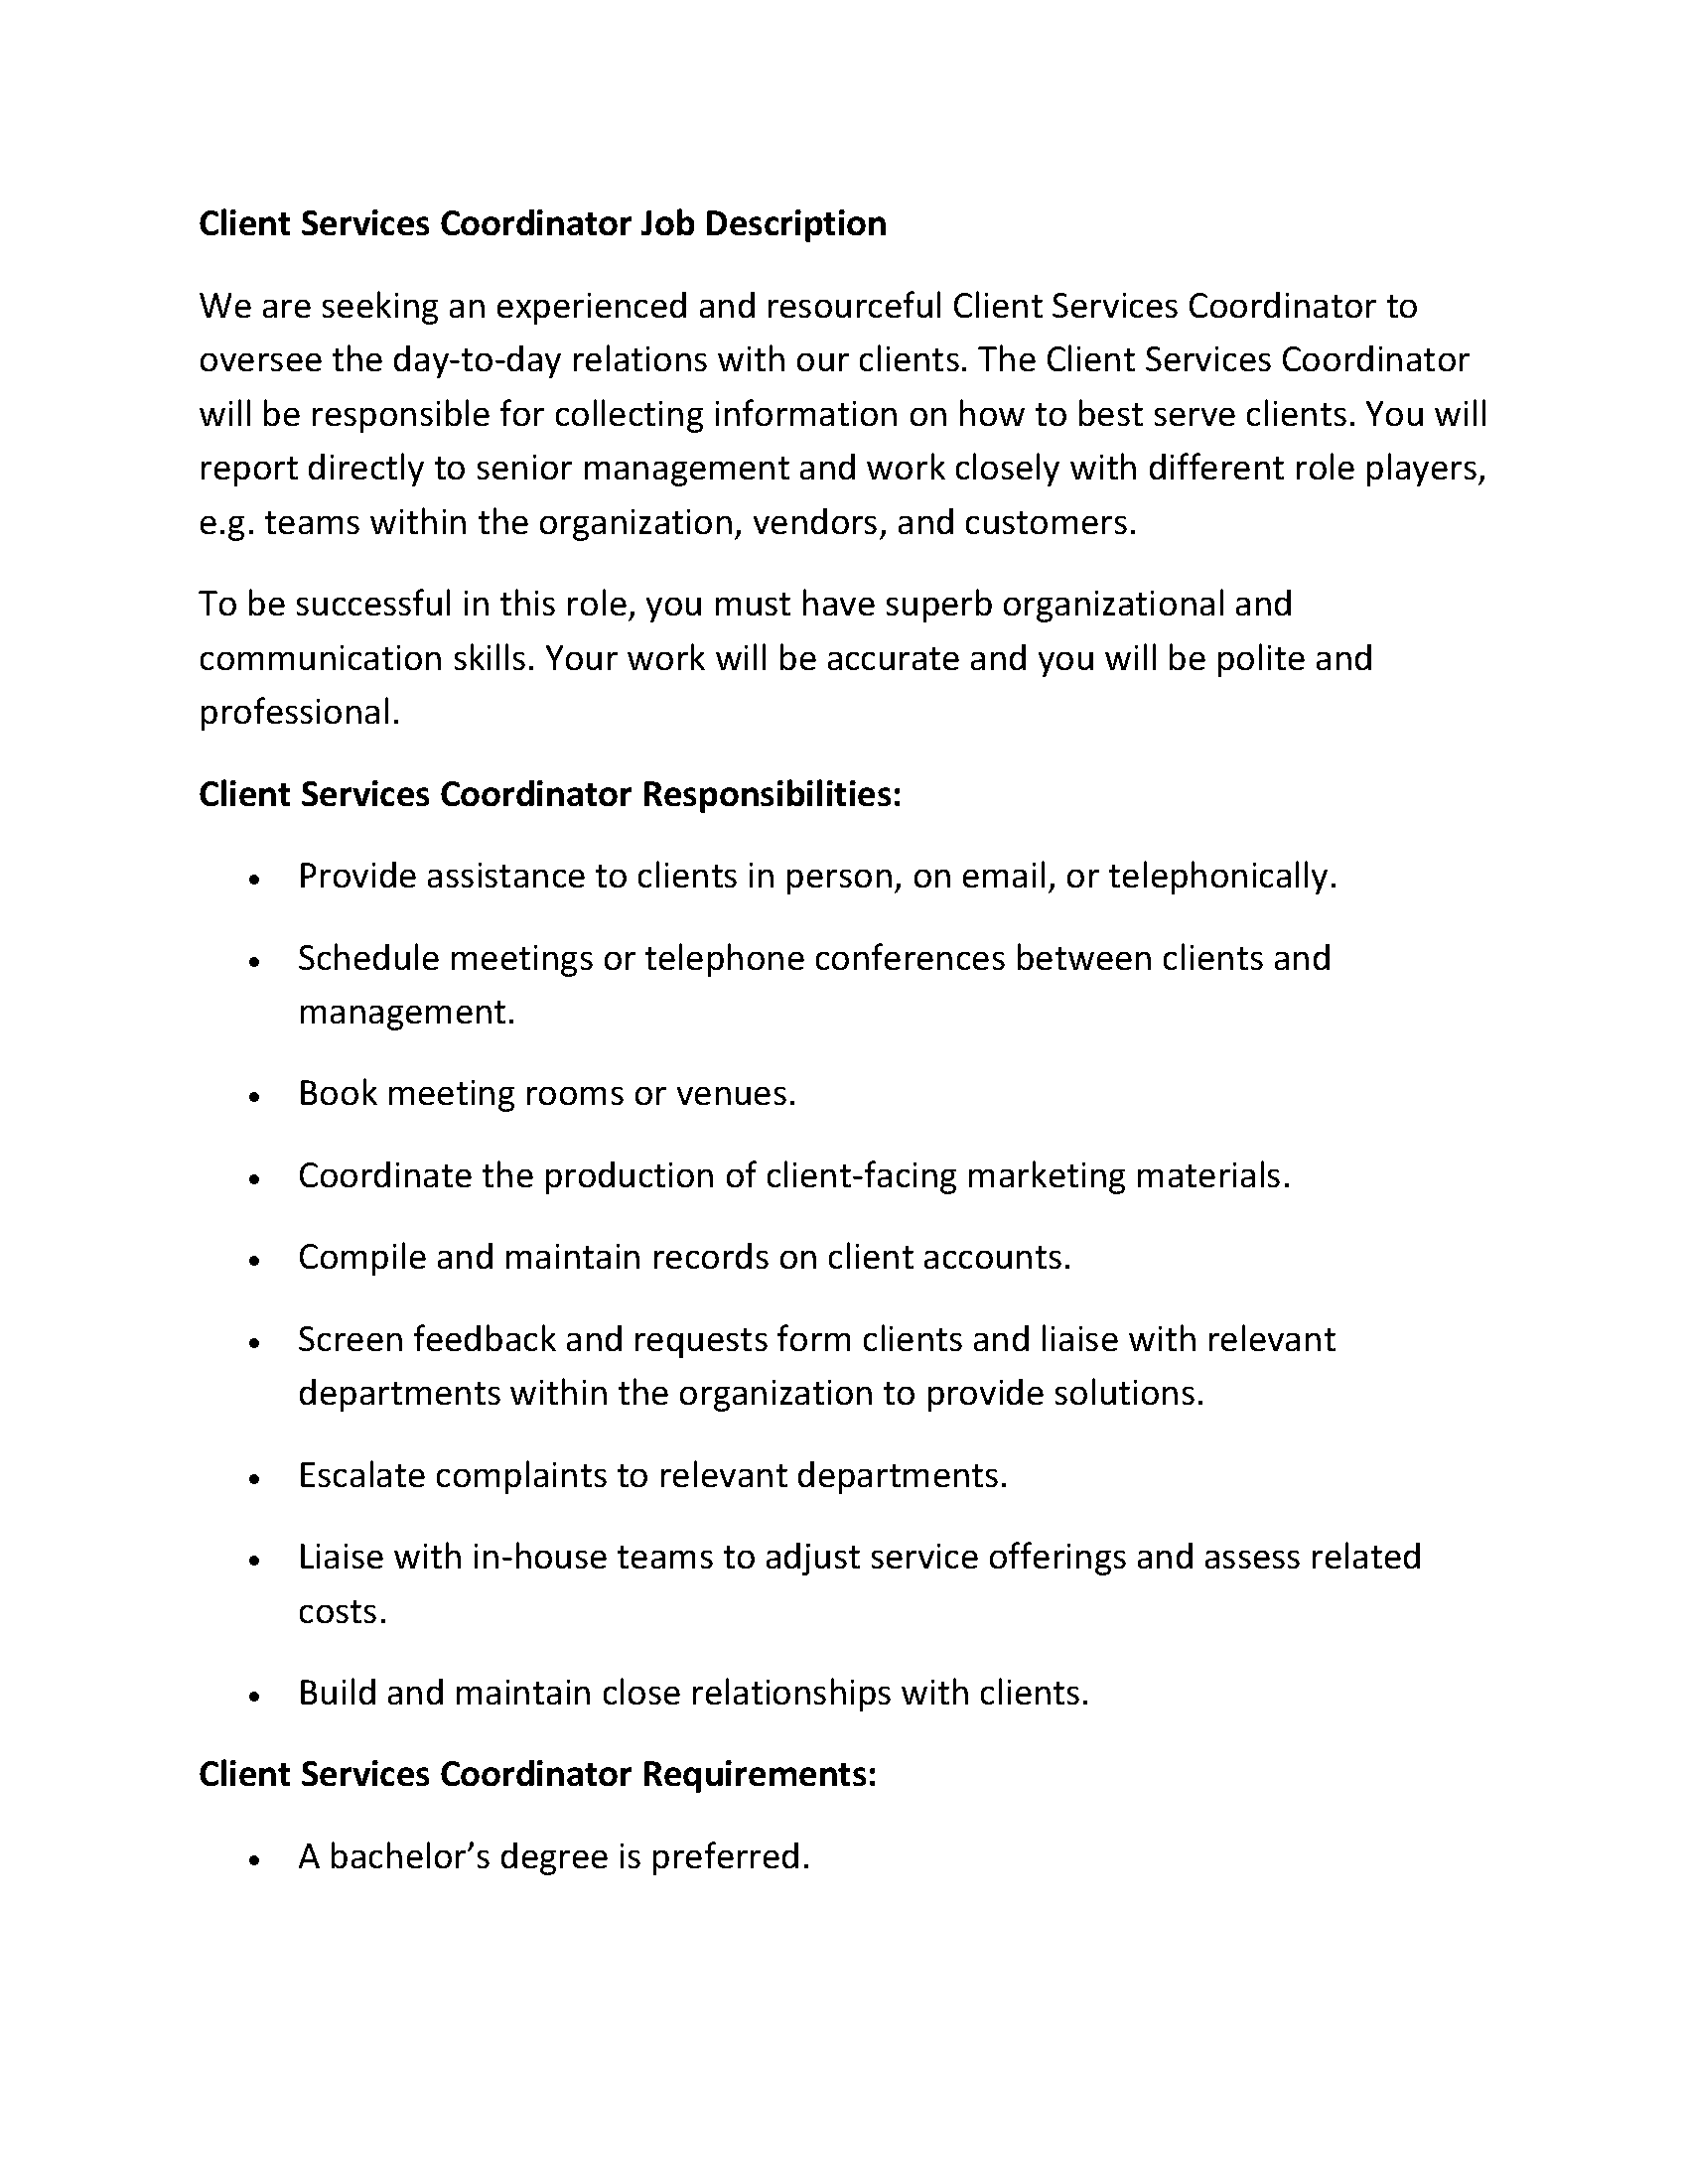 Client Services Coordinator Job Description